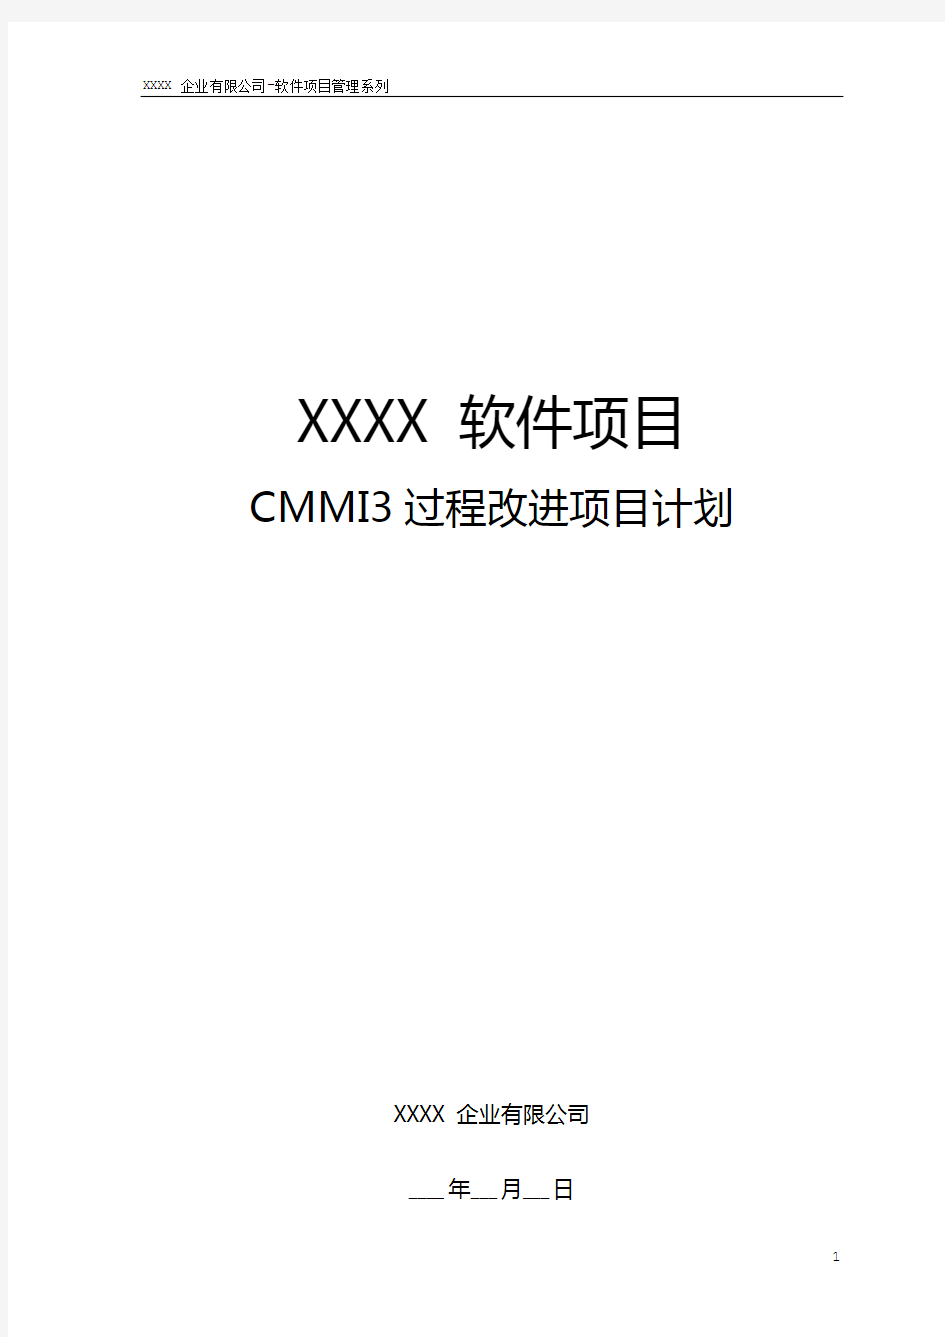 软件CMMI3过程改进项目计划模板